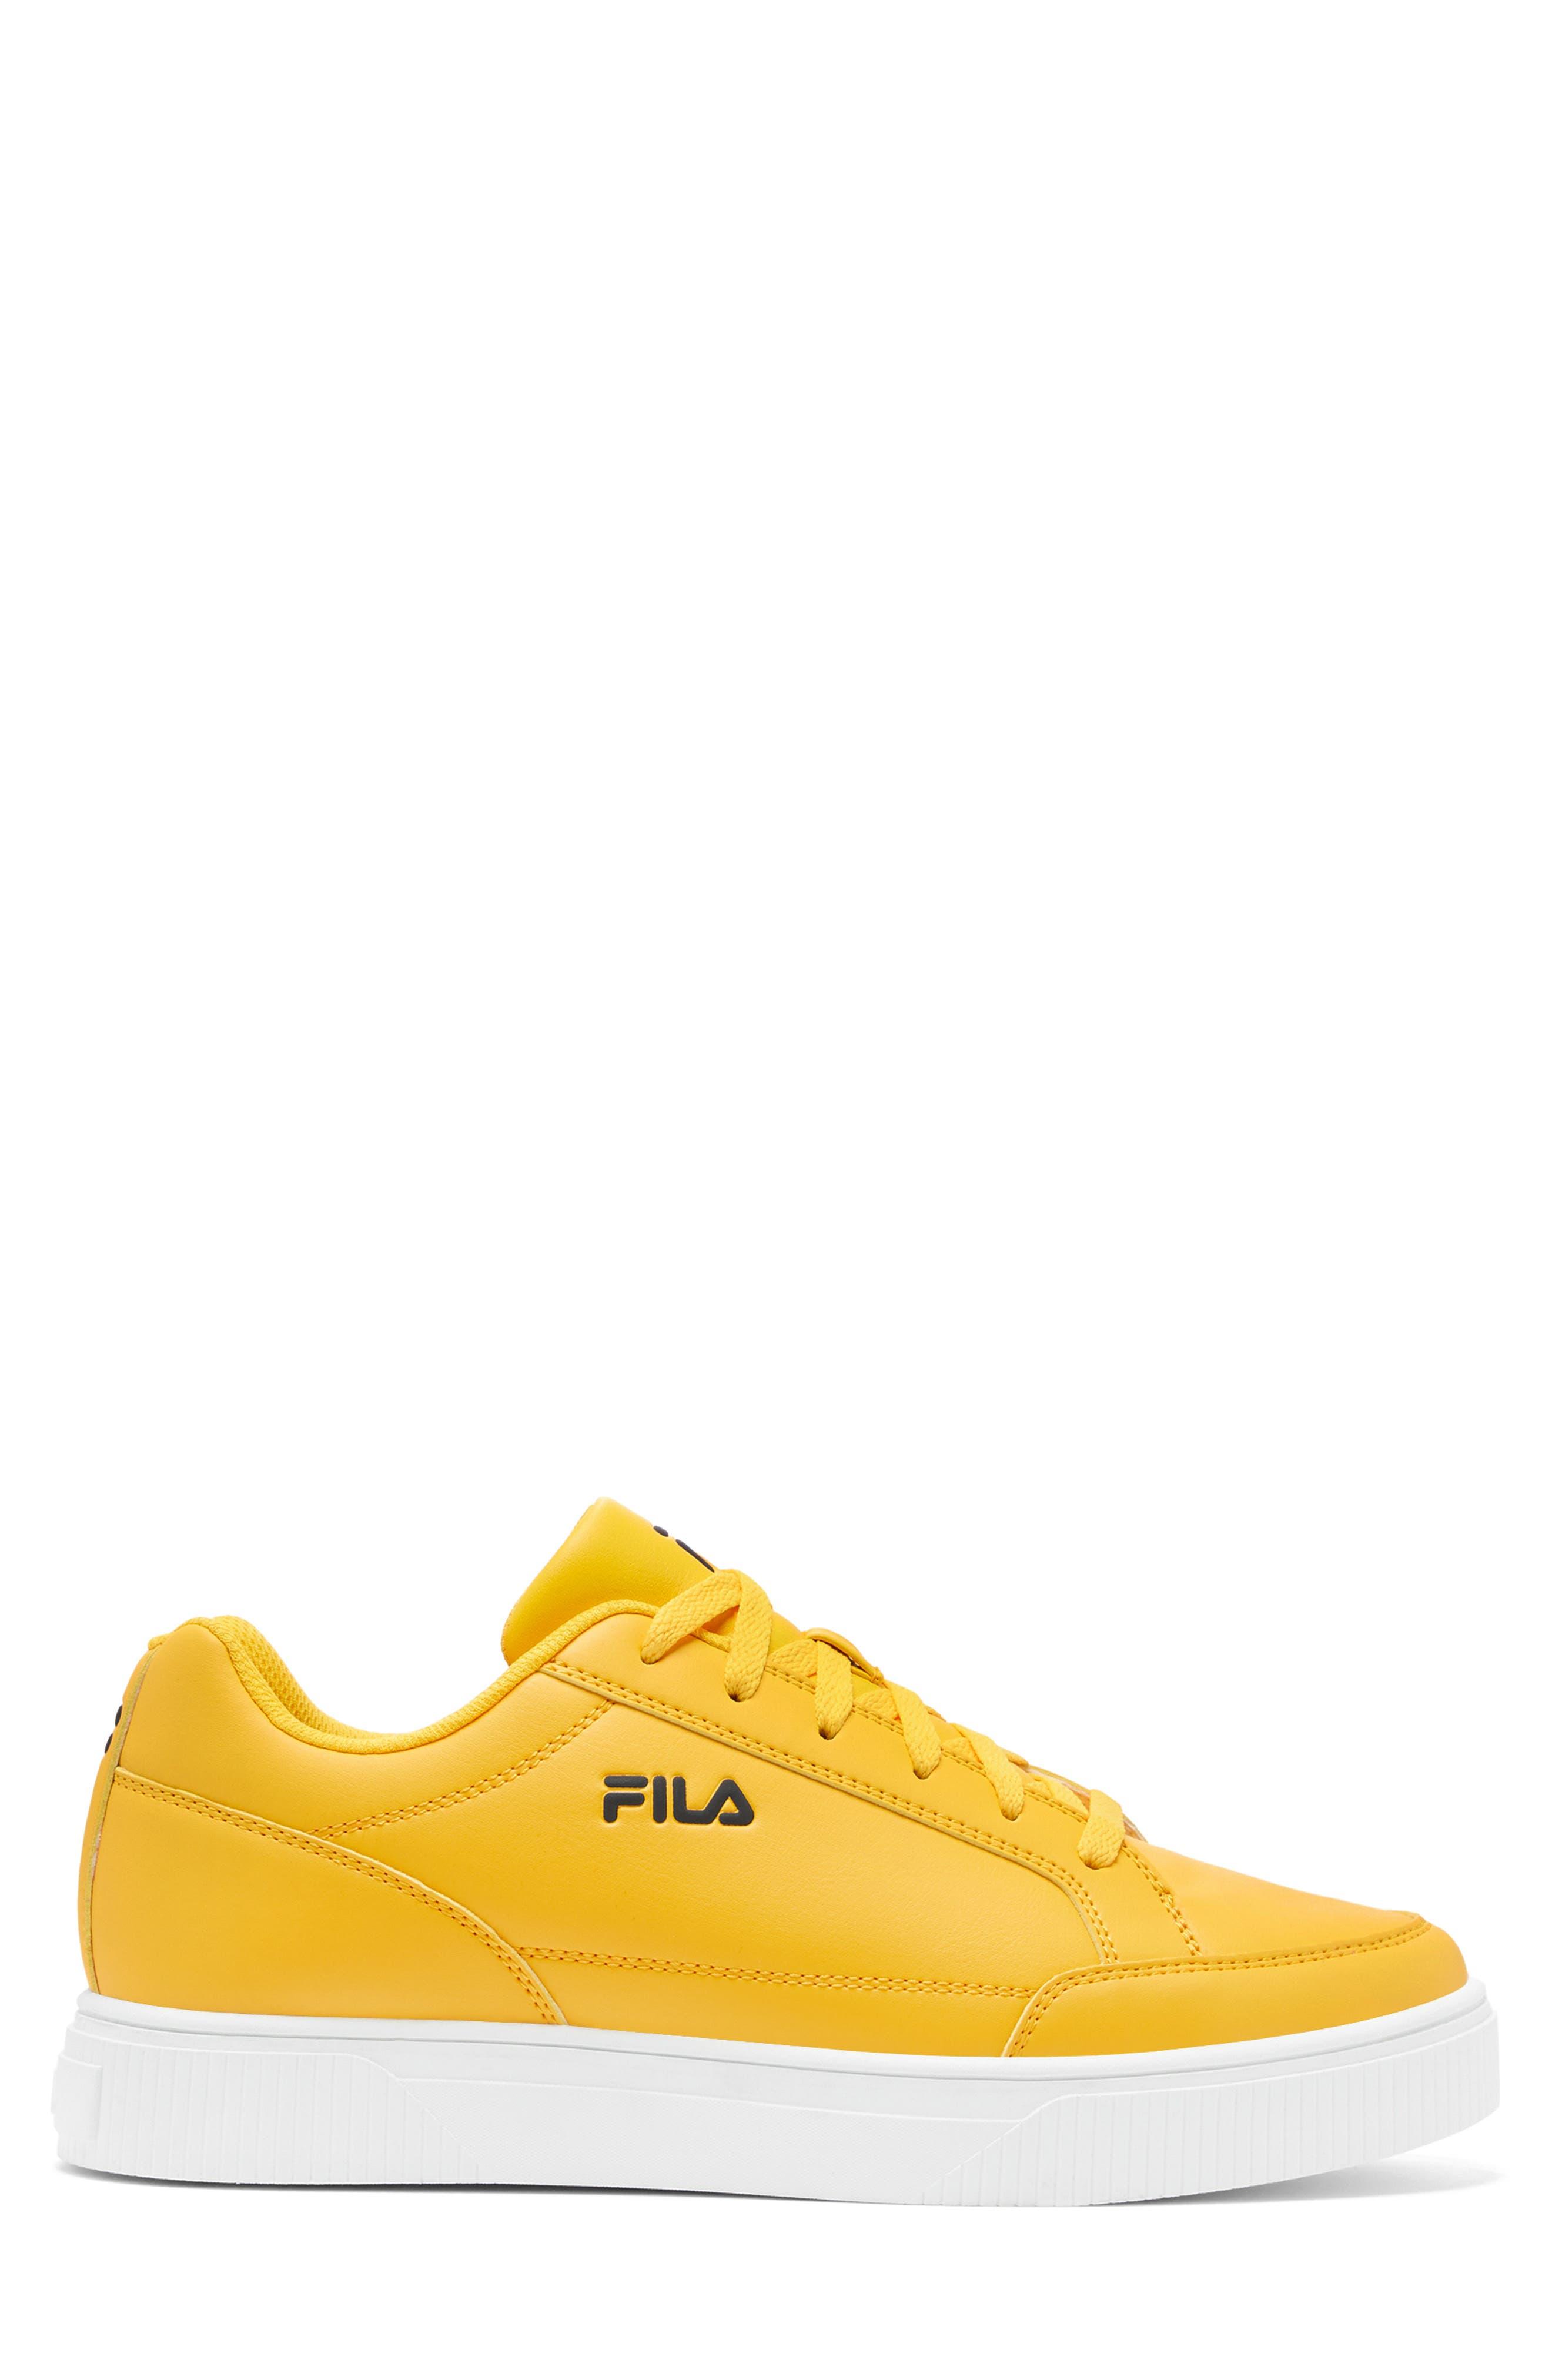 Fila Unlock Court Sneaker In Citrus/black/white At Nordstrom Rack in Yellow  for Men | Lyst